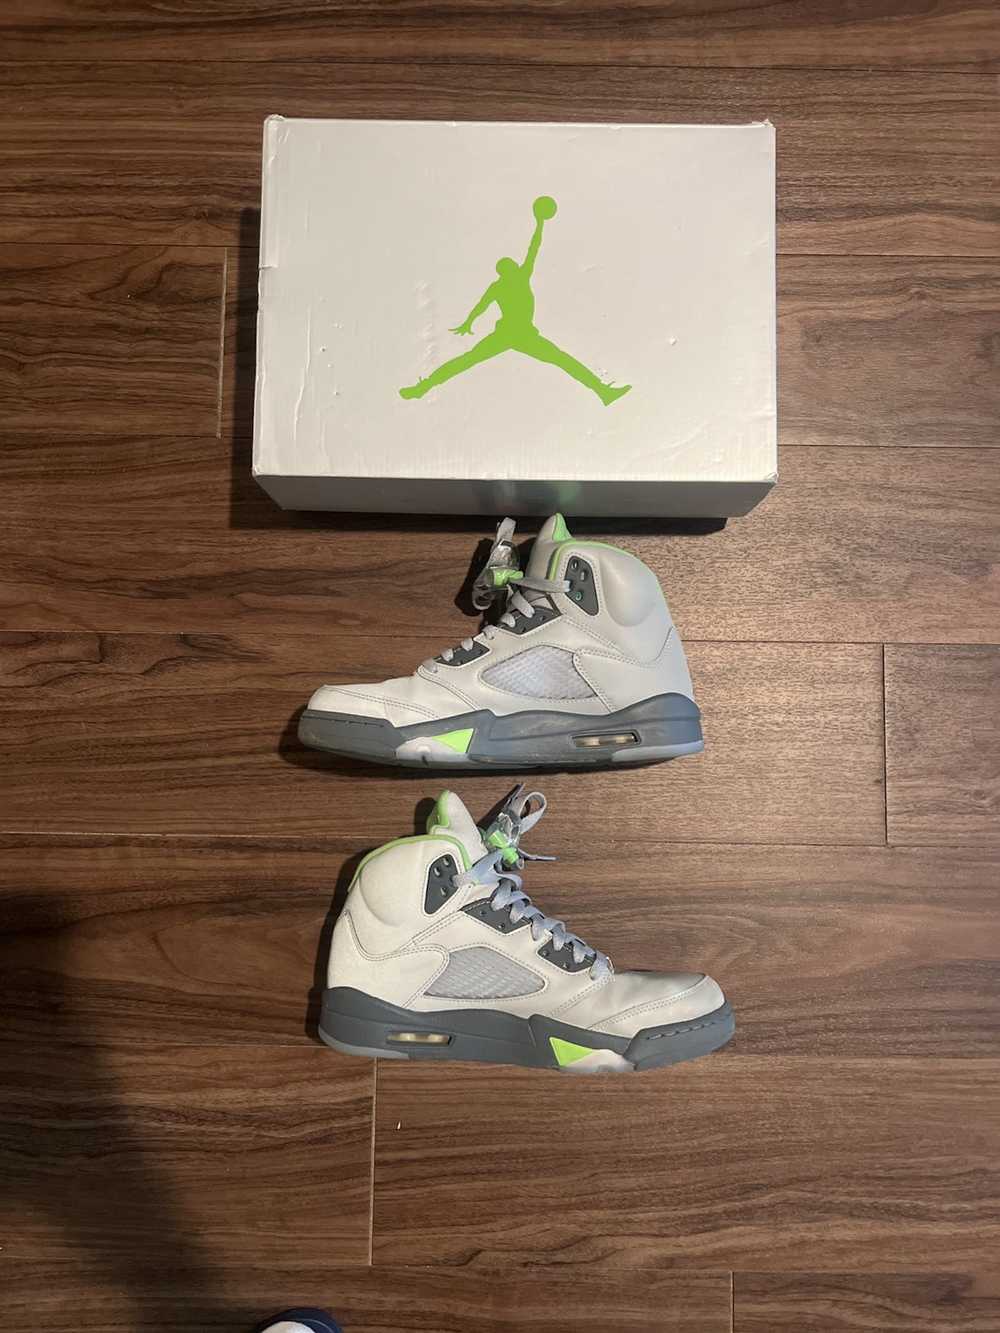 Jordan Brand × Nike Jordan 5 Retro “Green Bean” - image 1